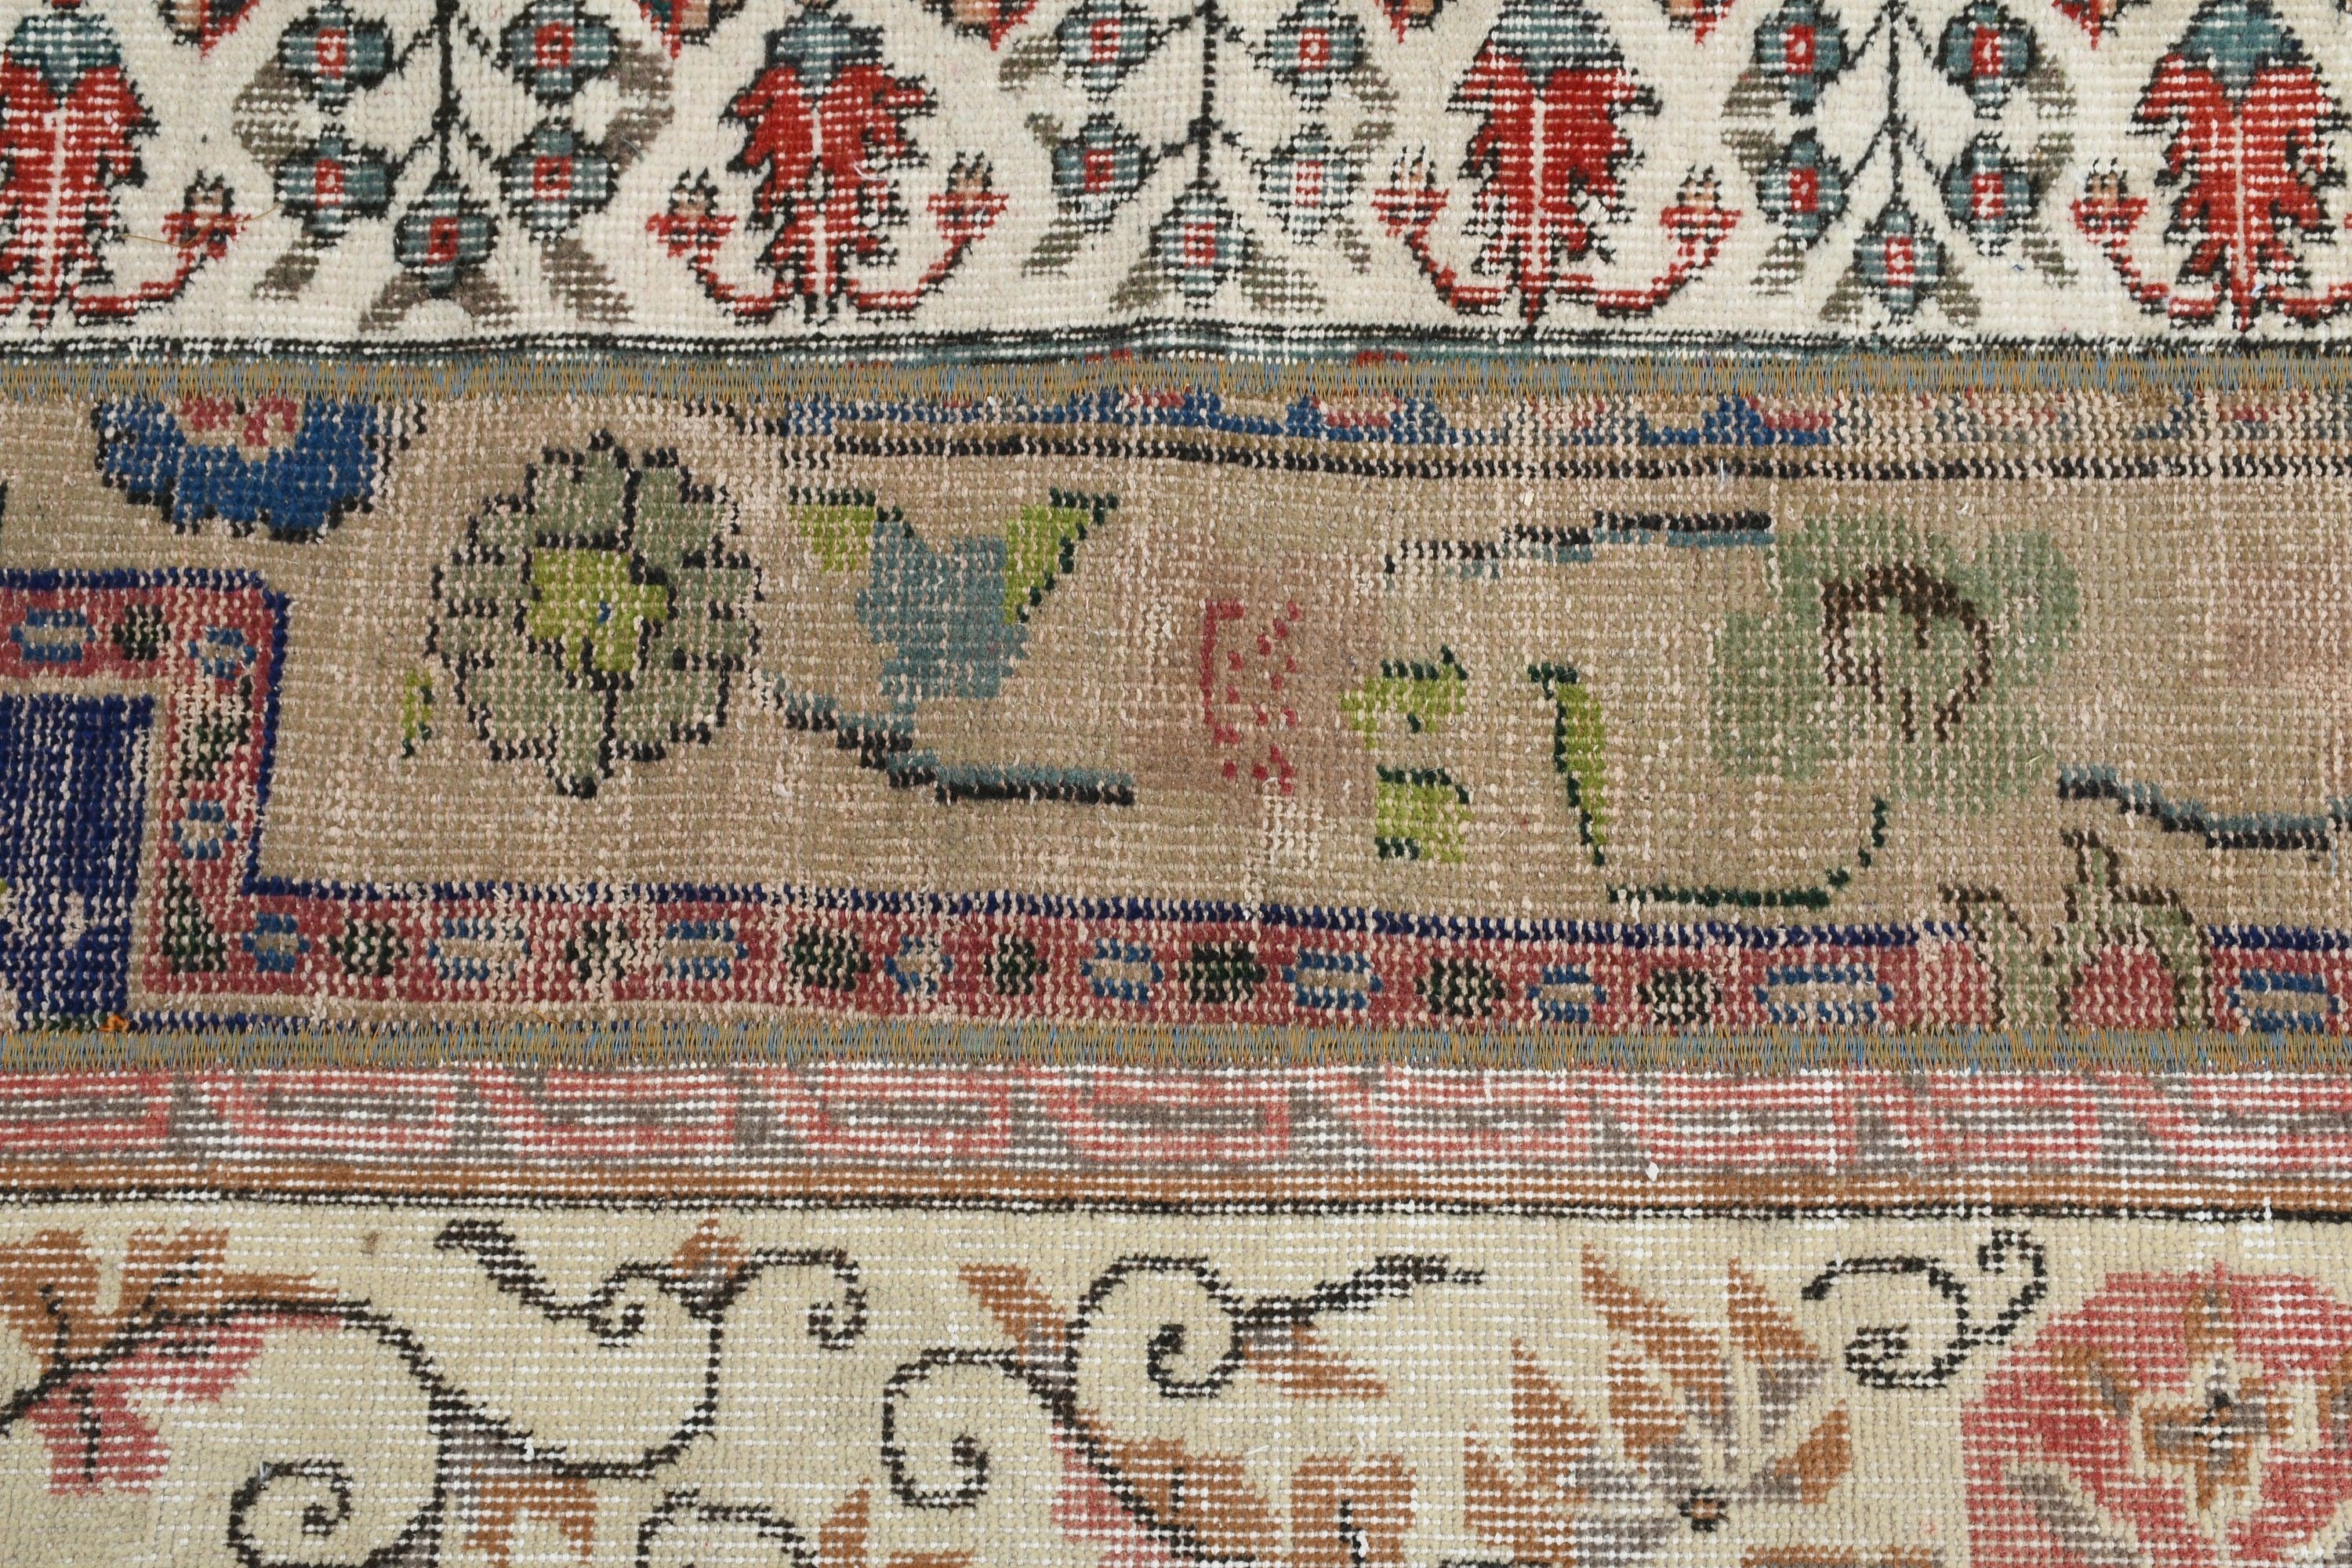 Vintage Rug, Beige Oriental Rugs, 2.1x4.4 ft Small Rug, Bath Rugs, Turkish Rugs, Door Mat Rugs, Home Decor Rug, Cool Rug, Rugs for Nursery